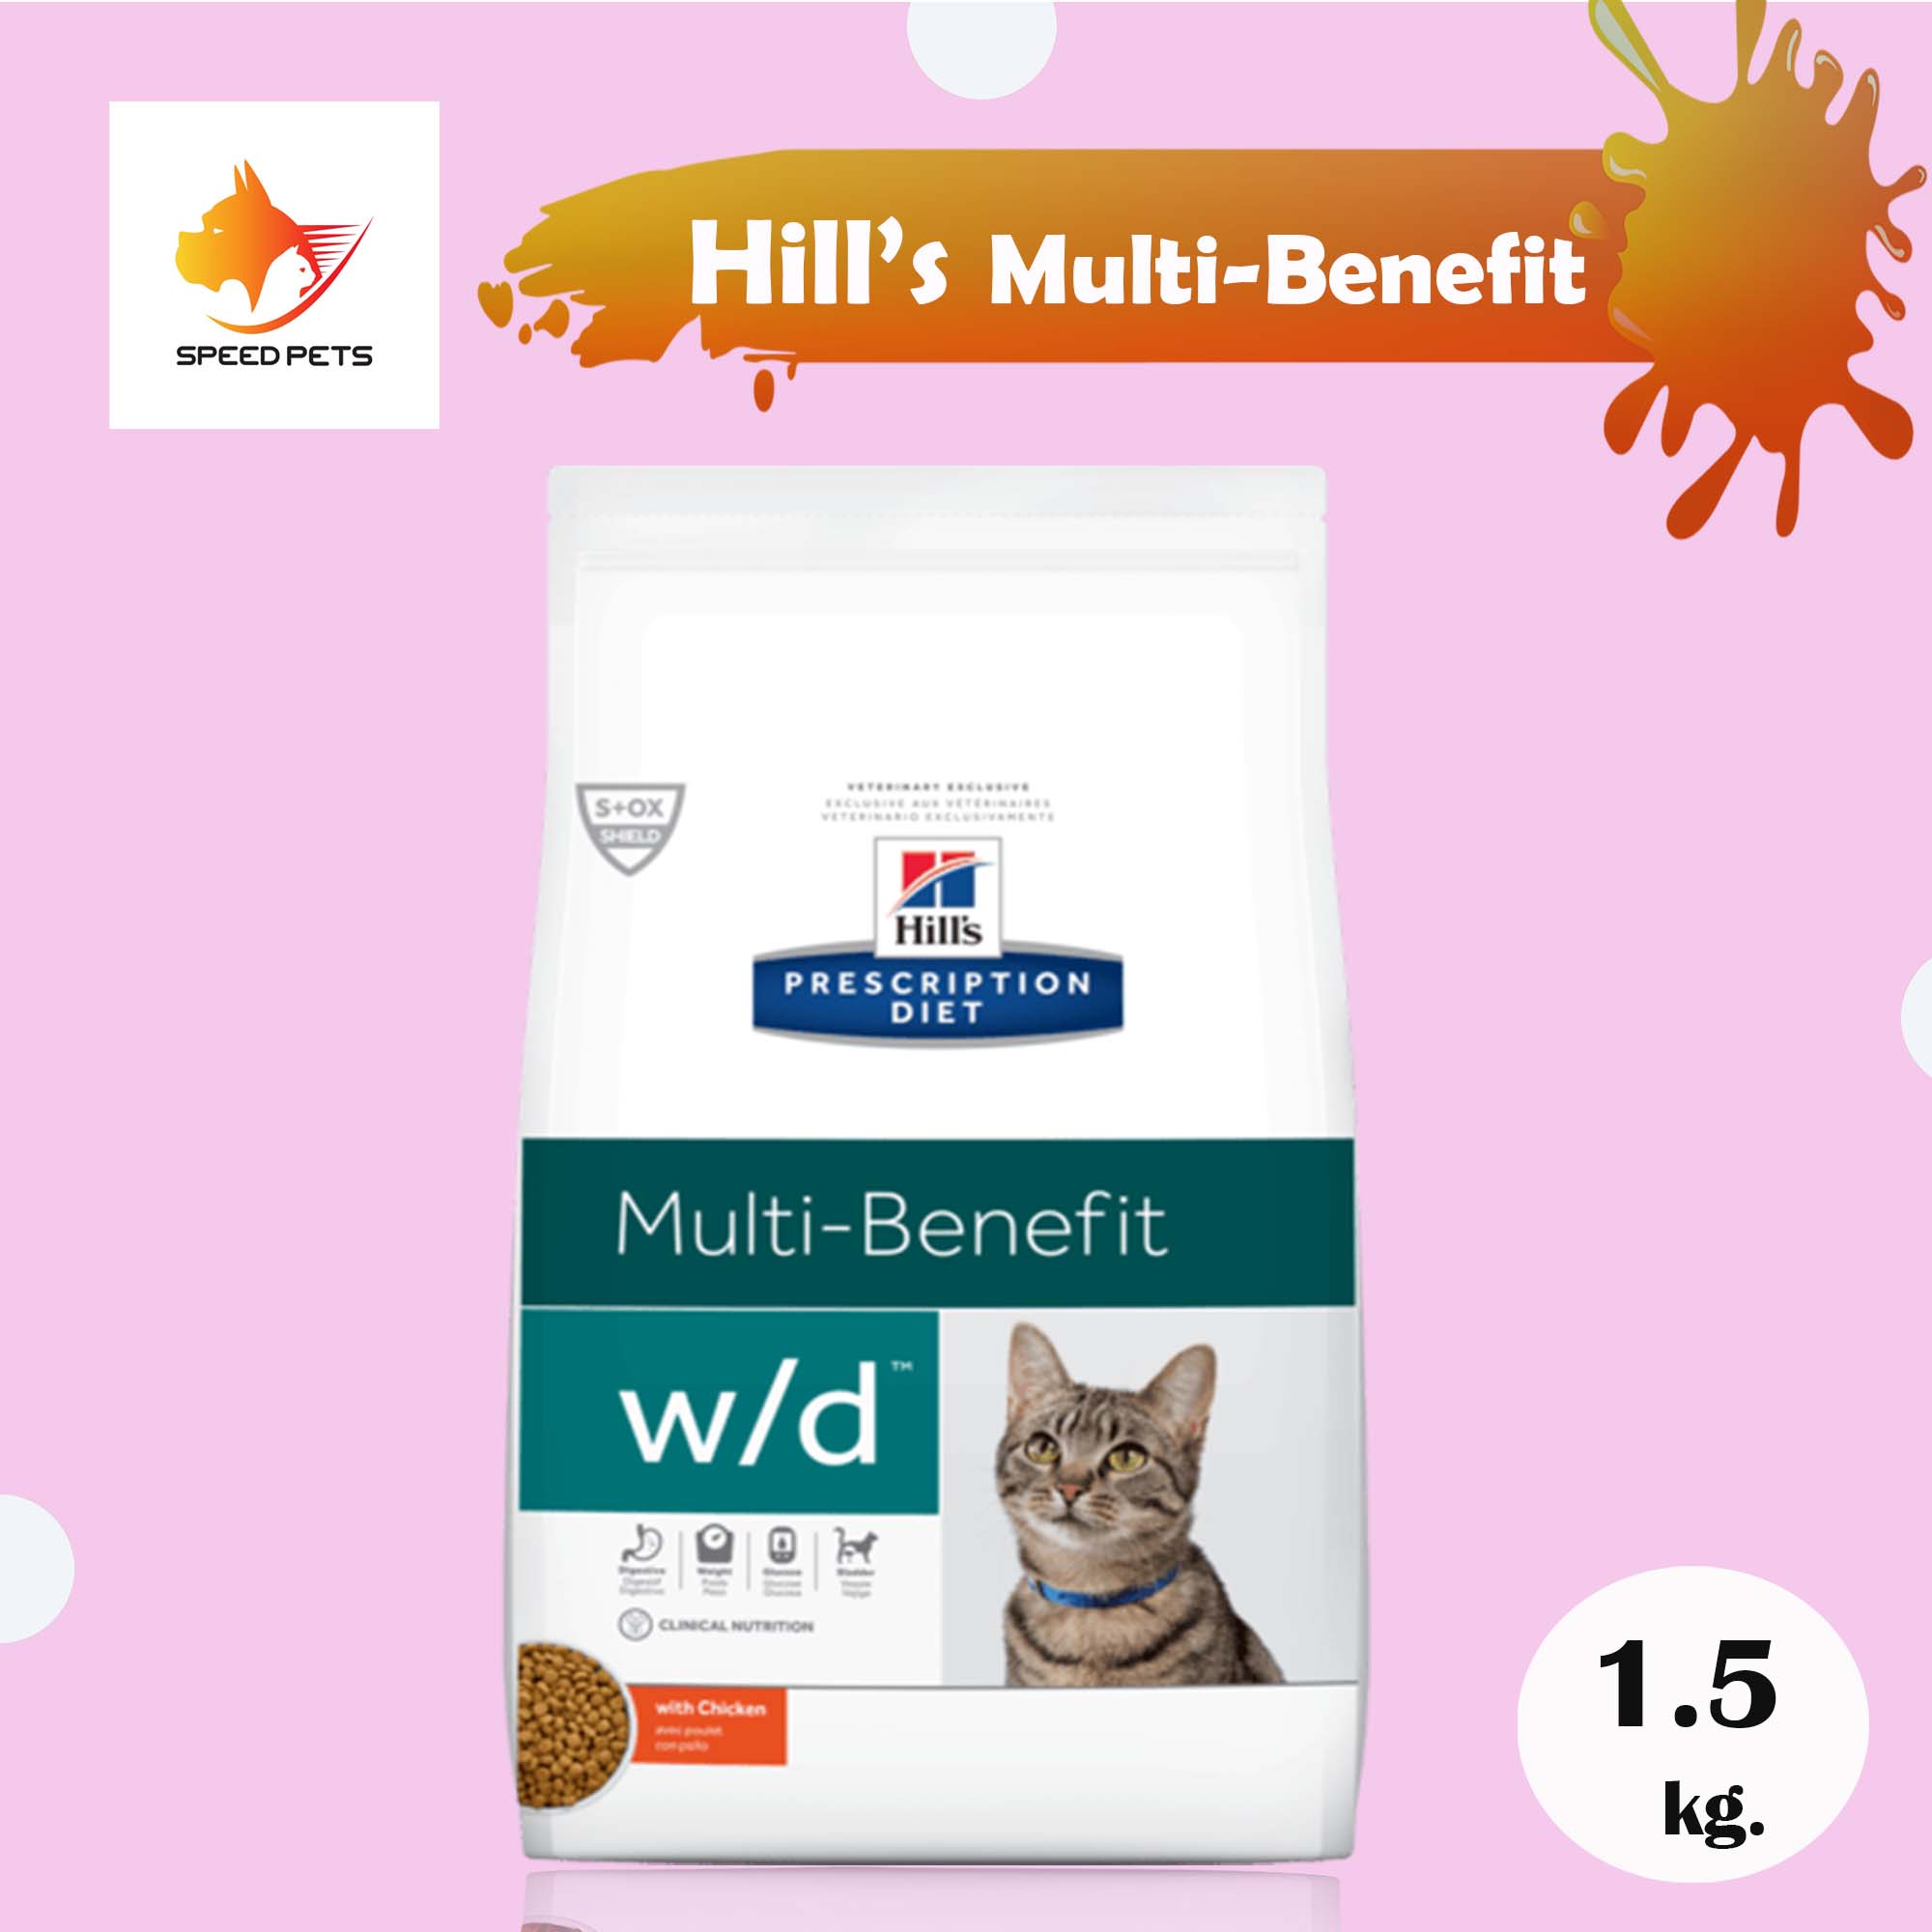 Hill's w/d Feline Cat Food ฮิลล์ อาหารแมว ควบคุมน้ำหนัก ช่วยดูแลระบบทางเดินปัสสาวะให้มีสุขภาพดี ขนาด 1.5 kg